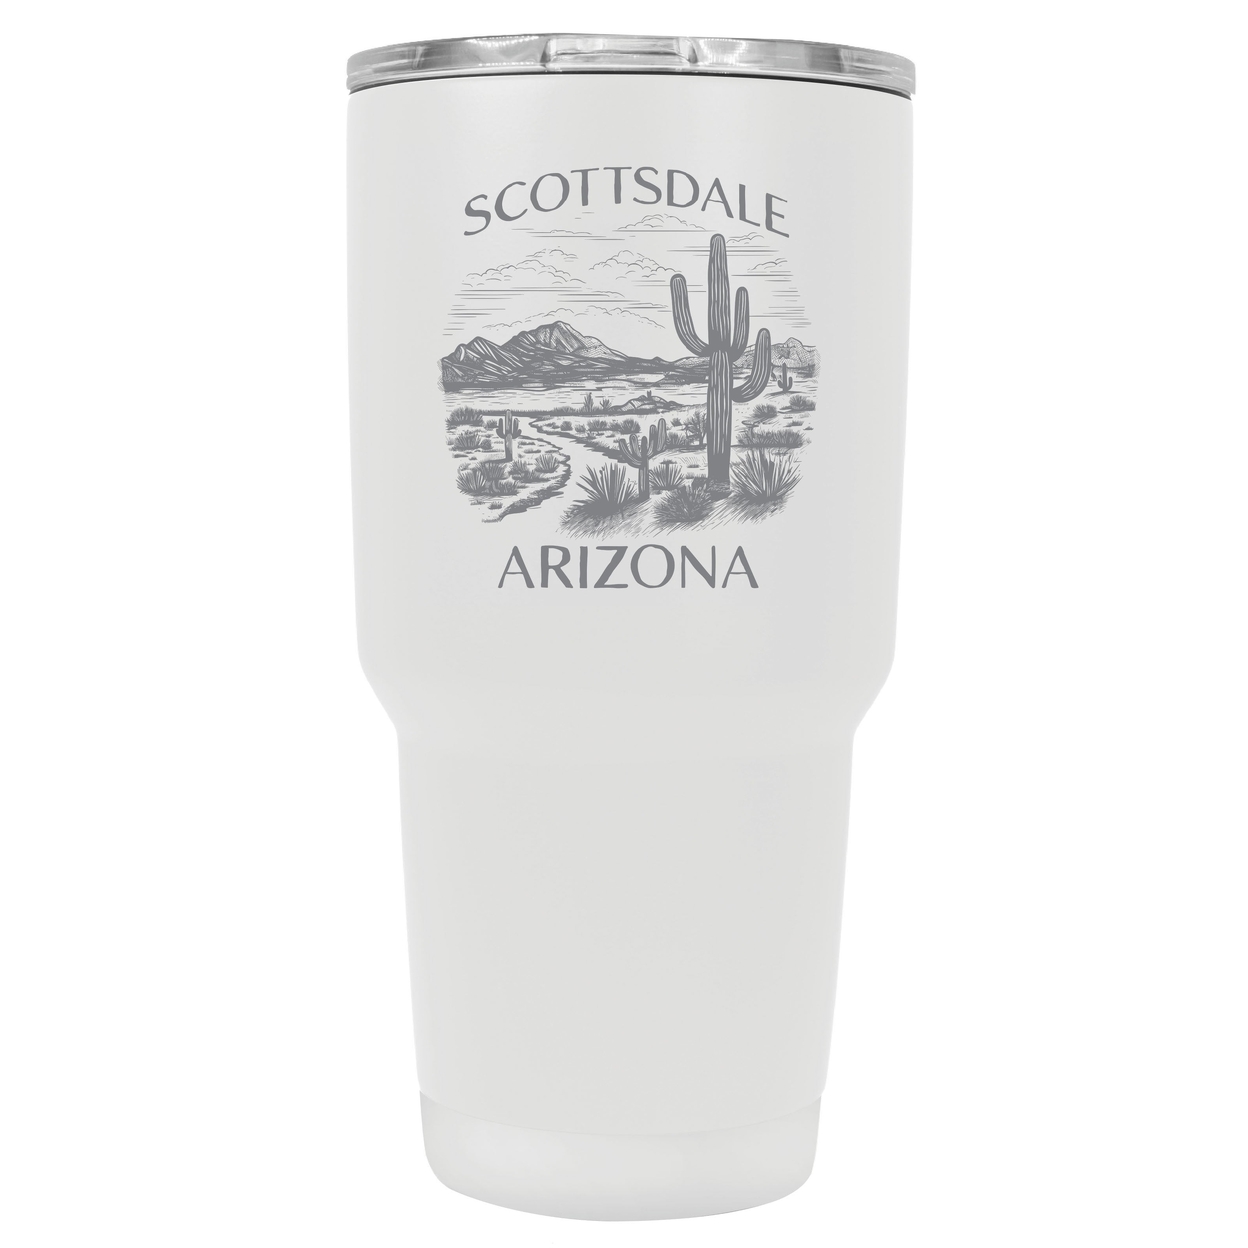 Scottsdale Arizona Souvenir 24 Oz Engraved Insulated Stainless Steel Tumbler - White,,Single Unit